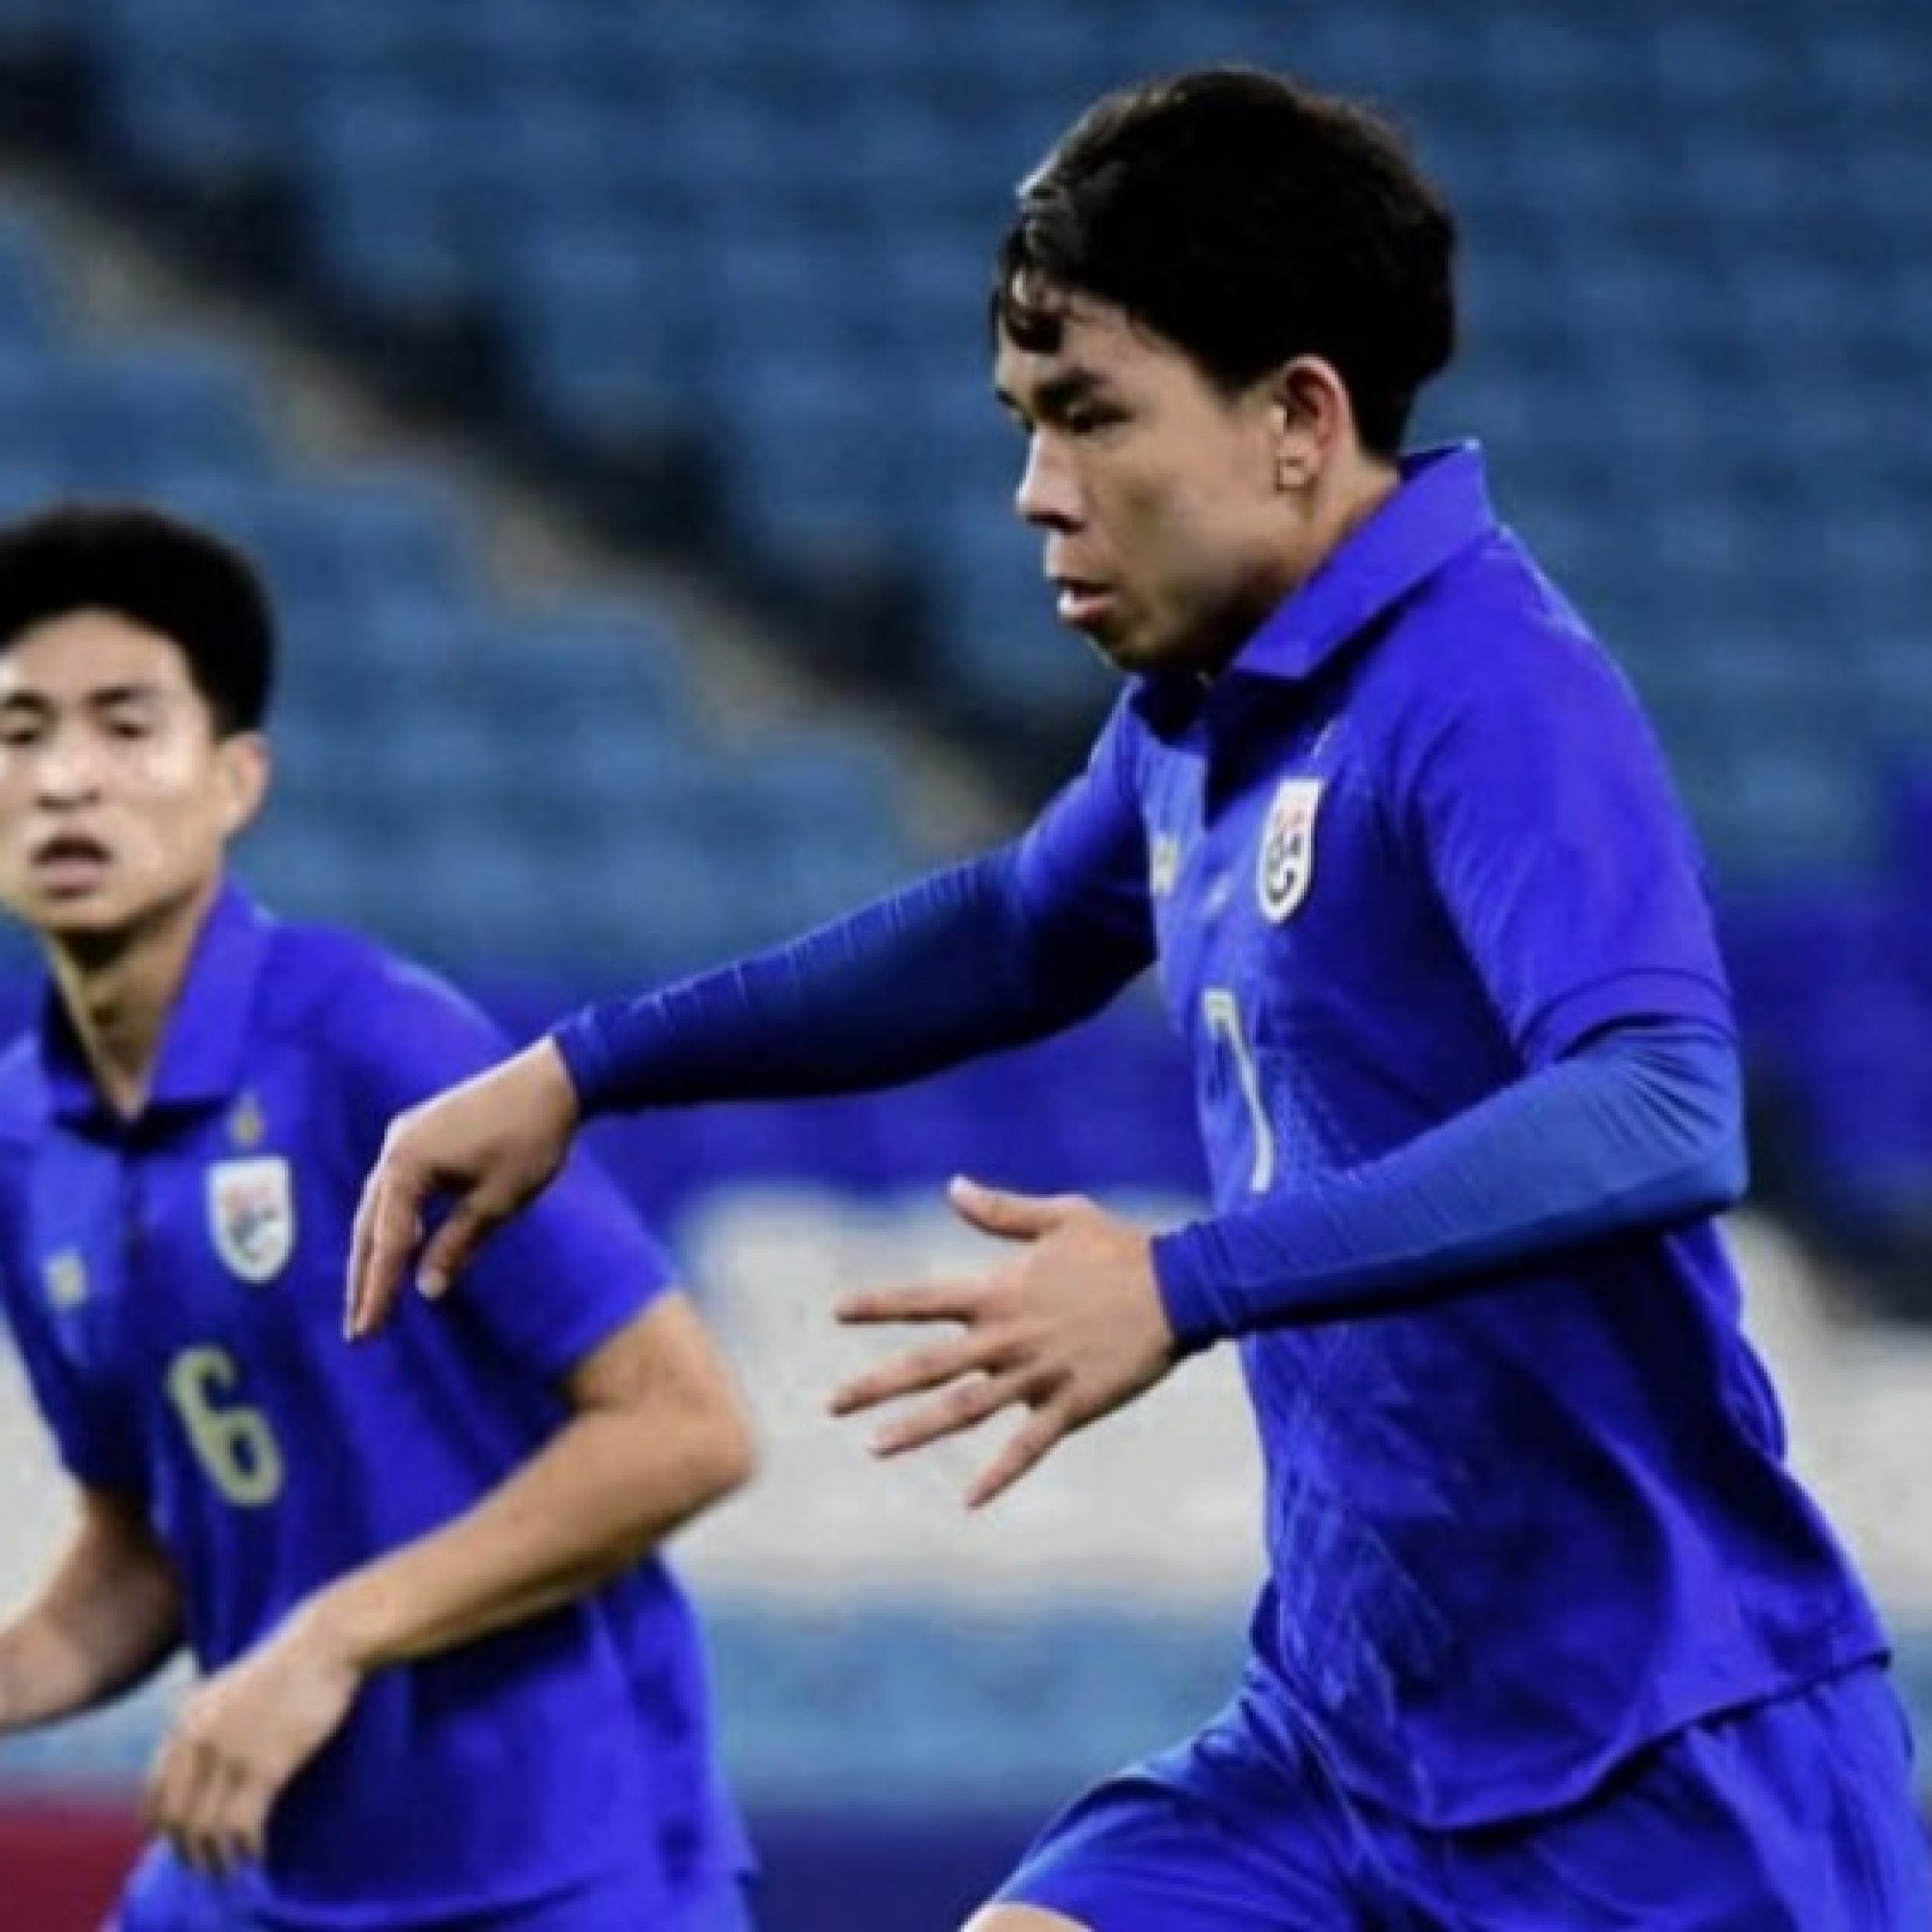  - 8 anh hào vào tứ kết U23 châu Á: Thái Lan đau đớn nhìn Việt Nam đi tiếp, Iraq "lật kèo"